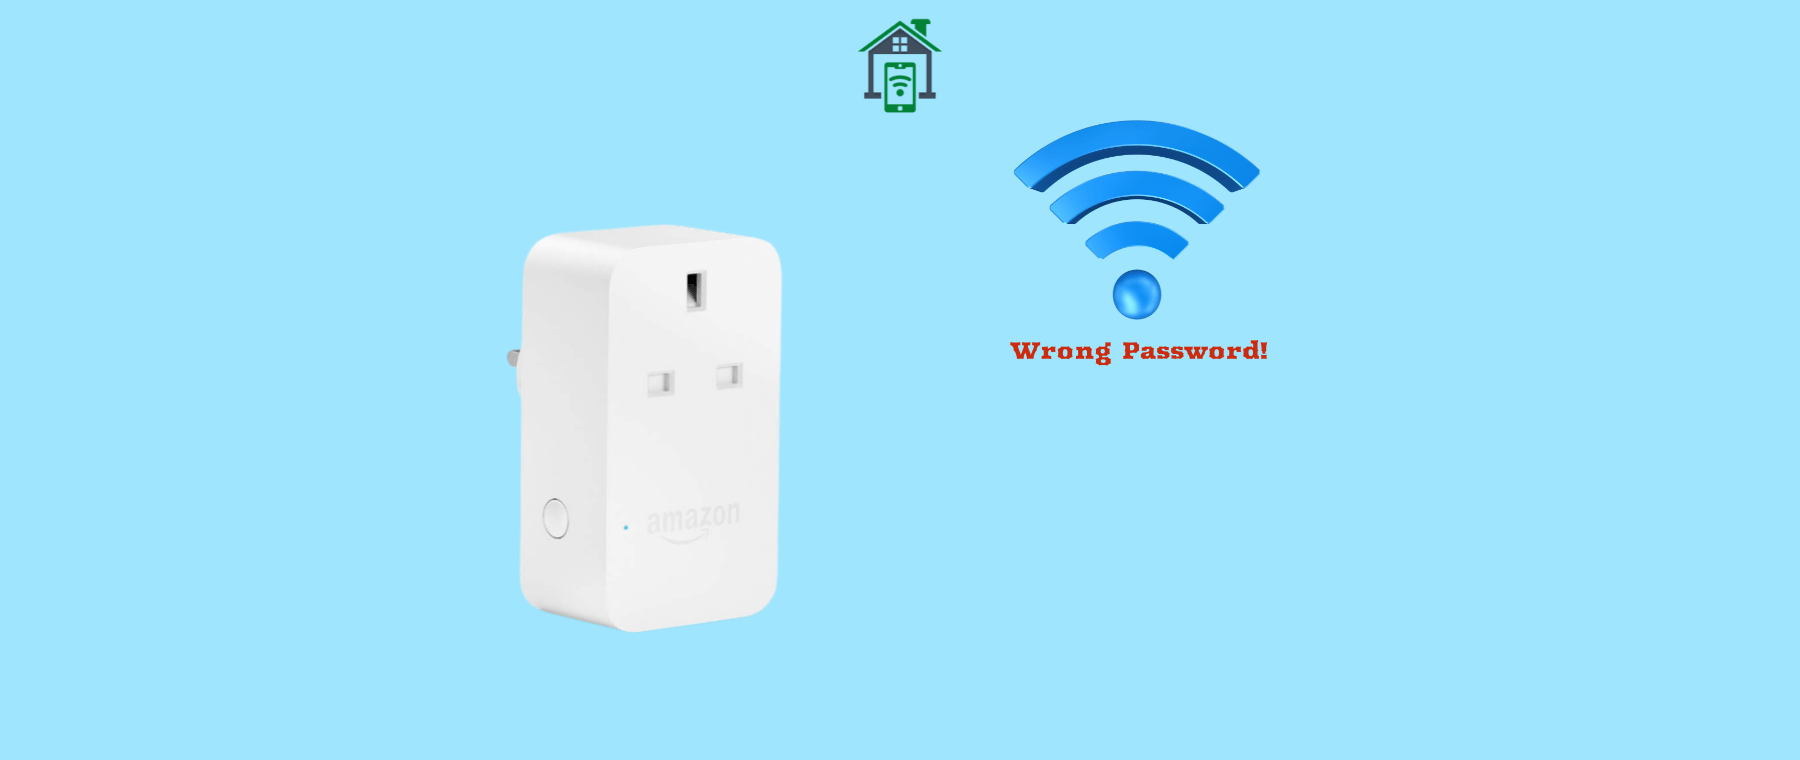 amazon-smart-plug-says-wifi-password-is-wrong